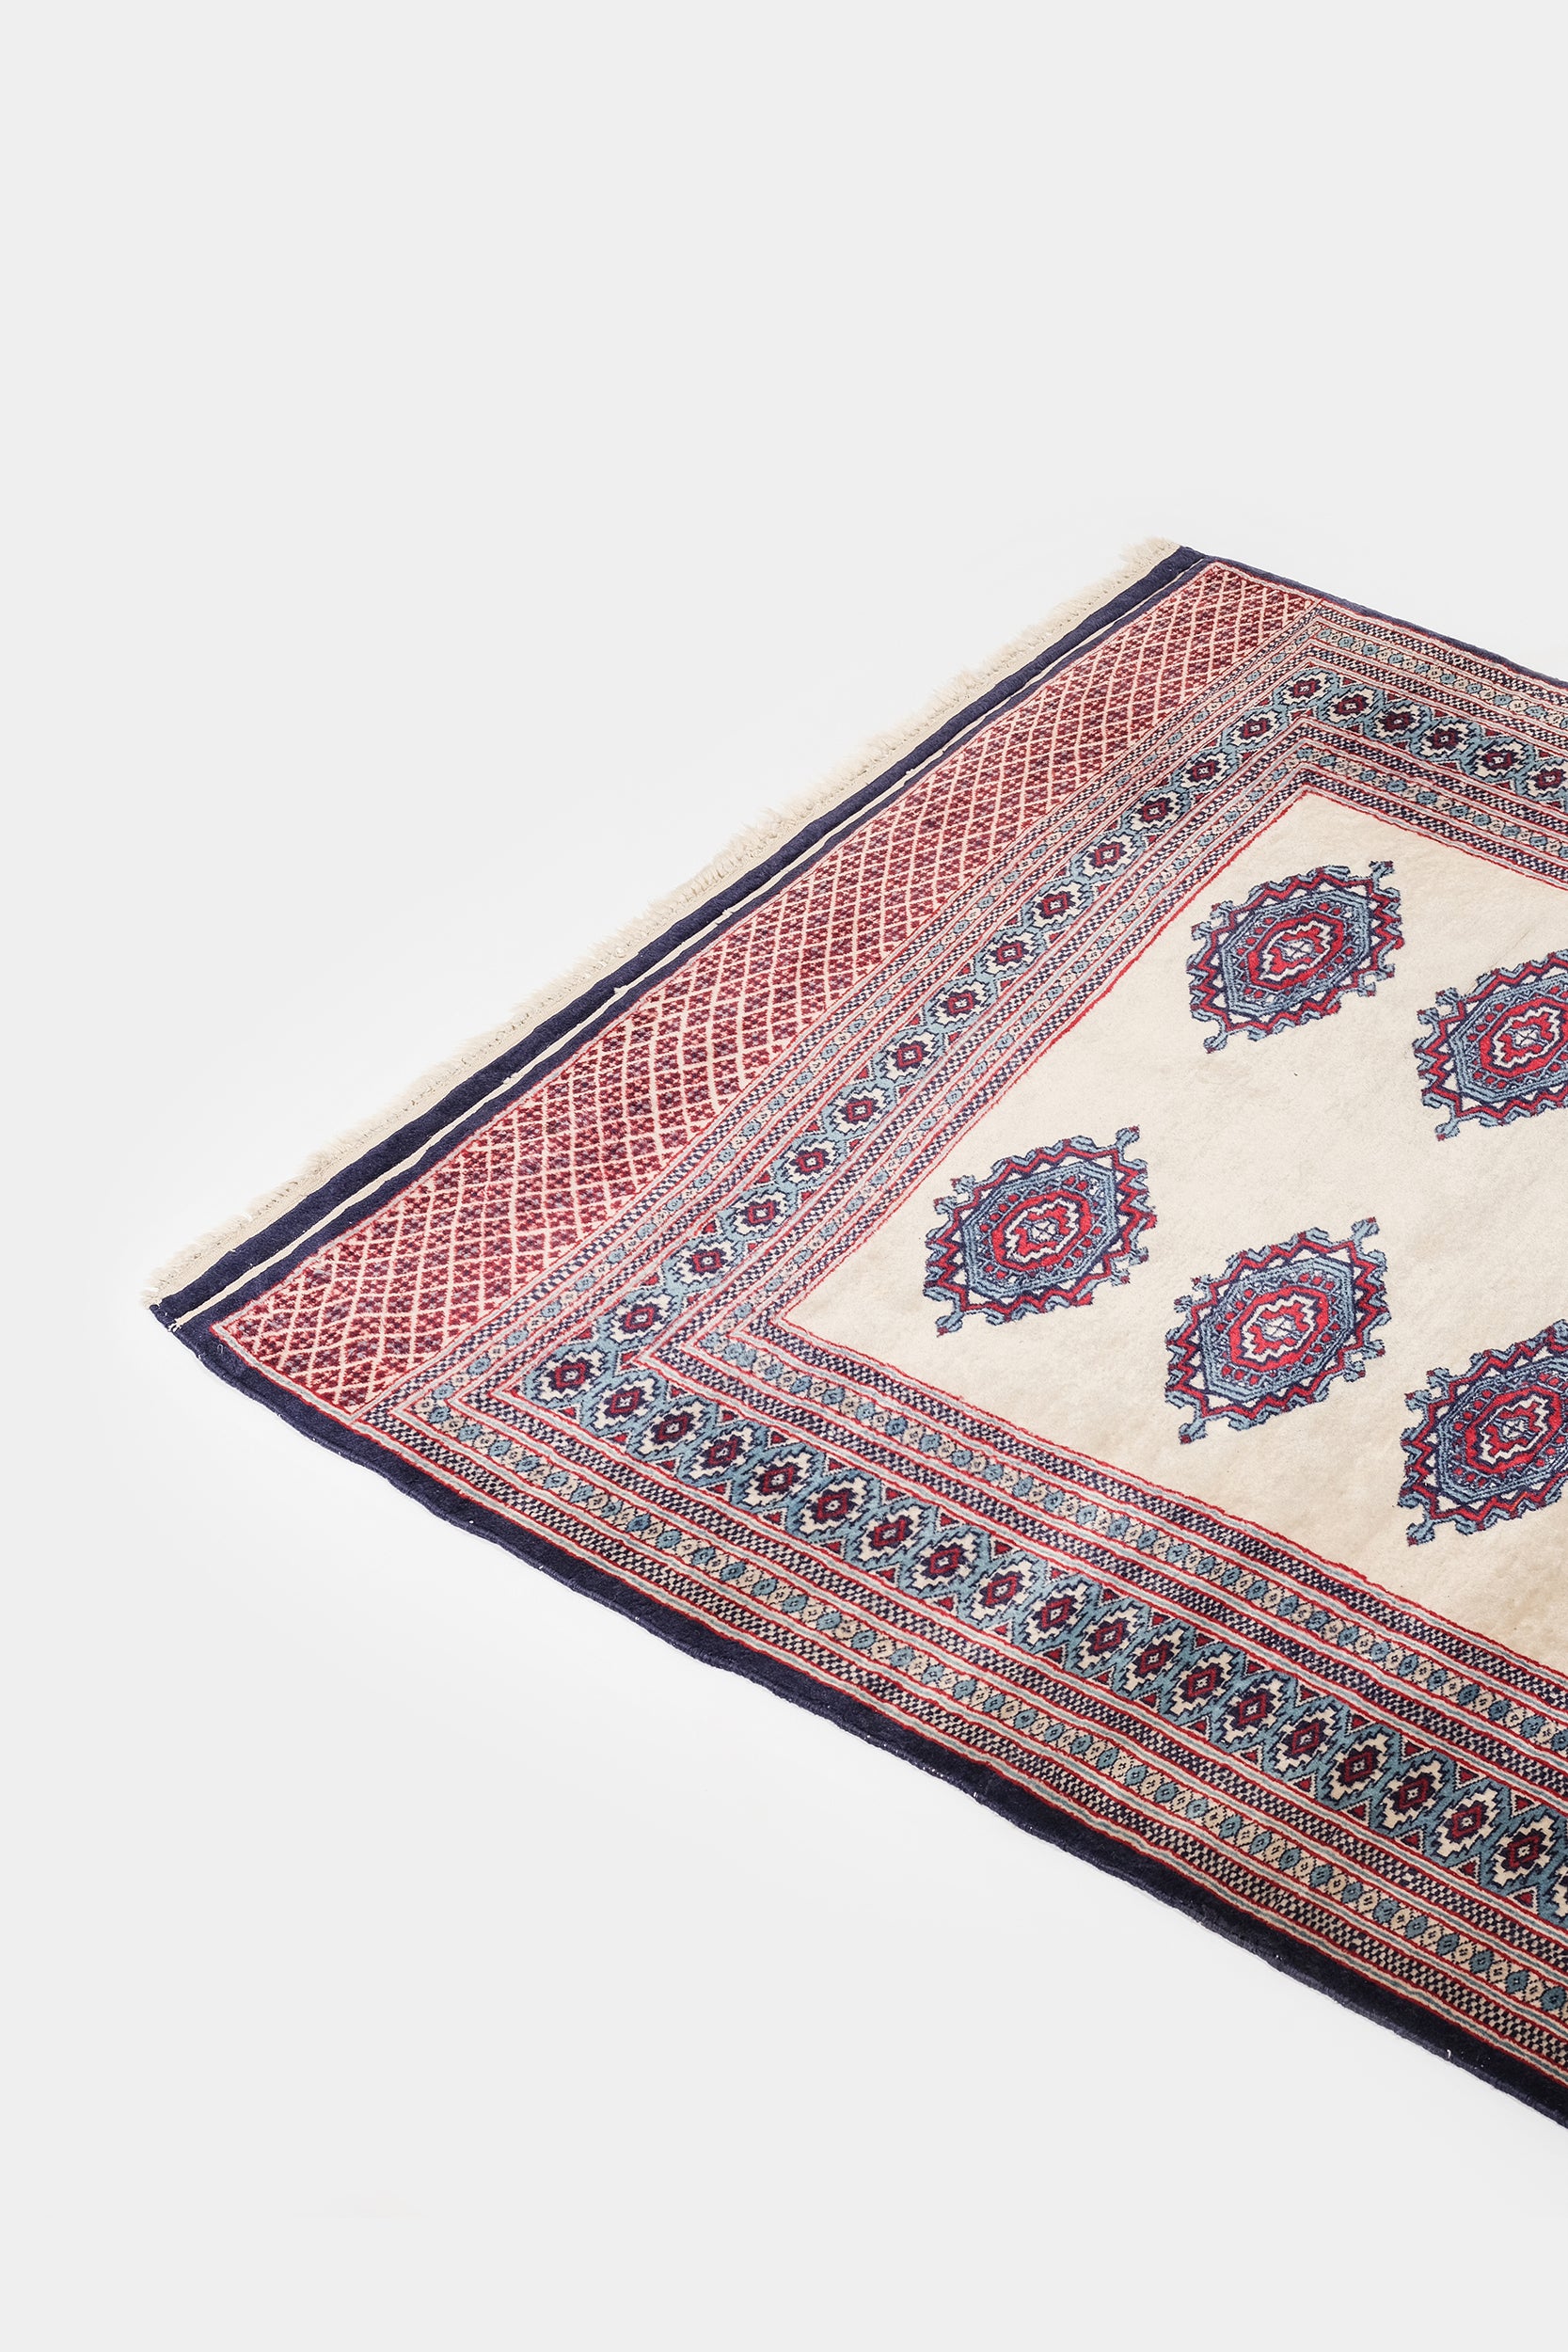 Turkmen Bukhari Carpet, Persia, 20s